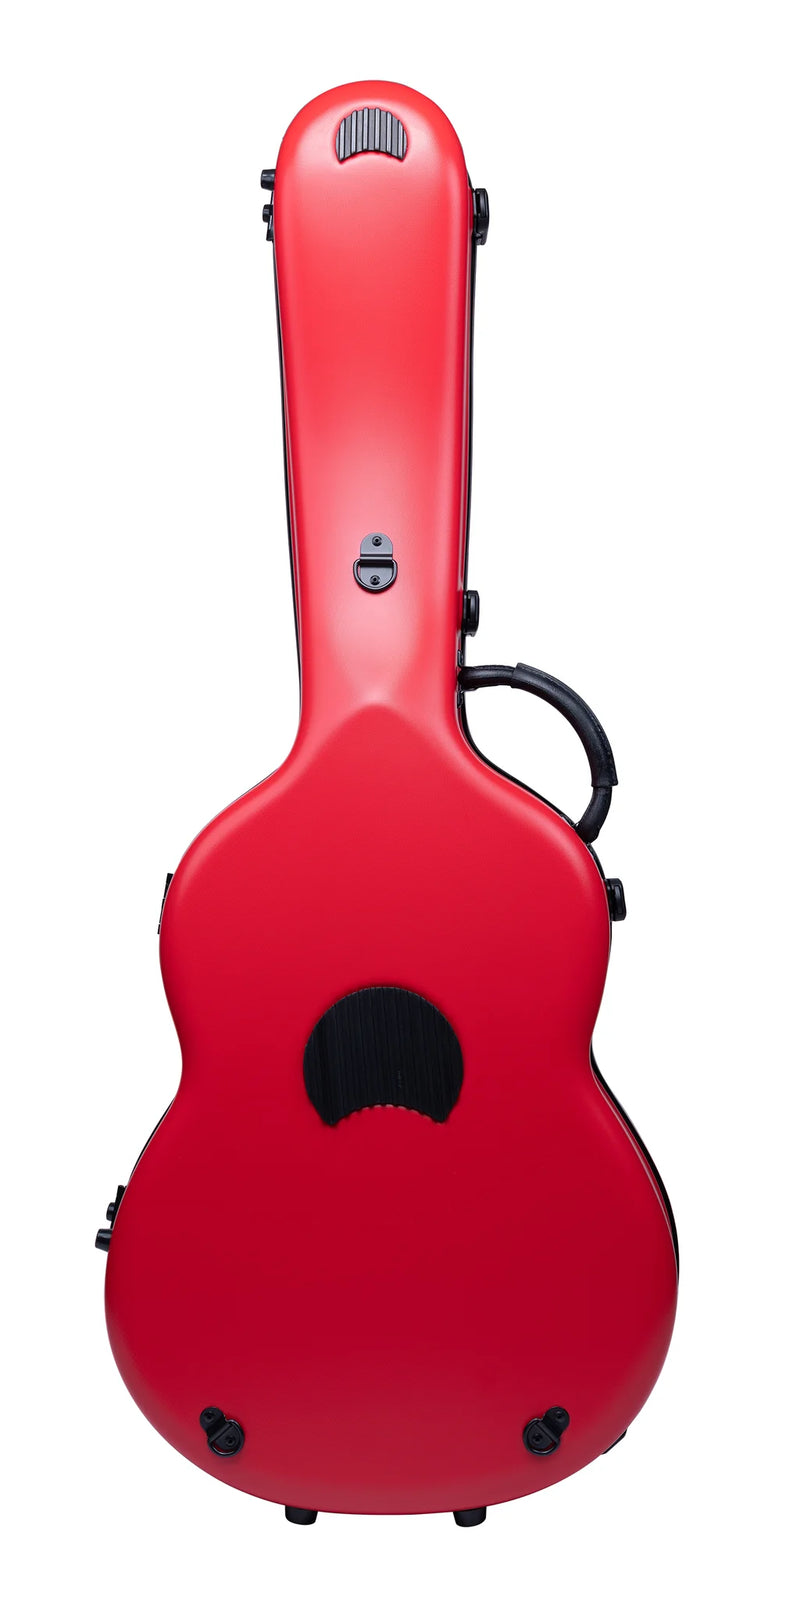 Bam 8002SRG Étui ABS pour guitare classique classique (rouge grenade)